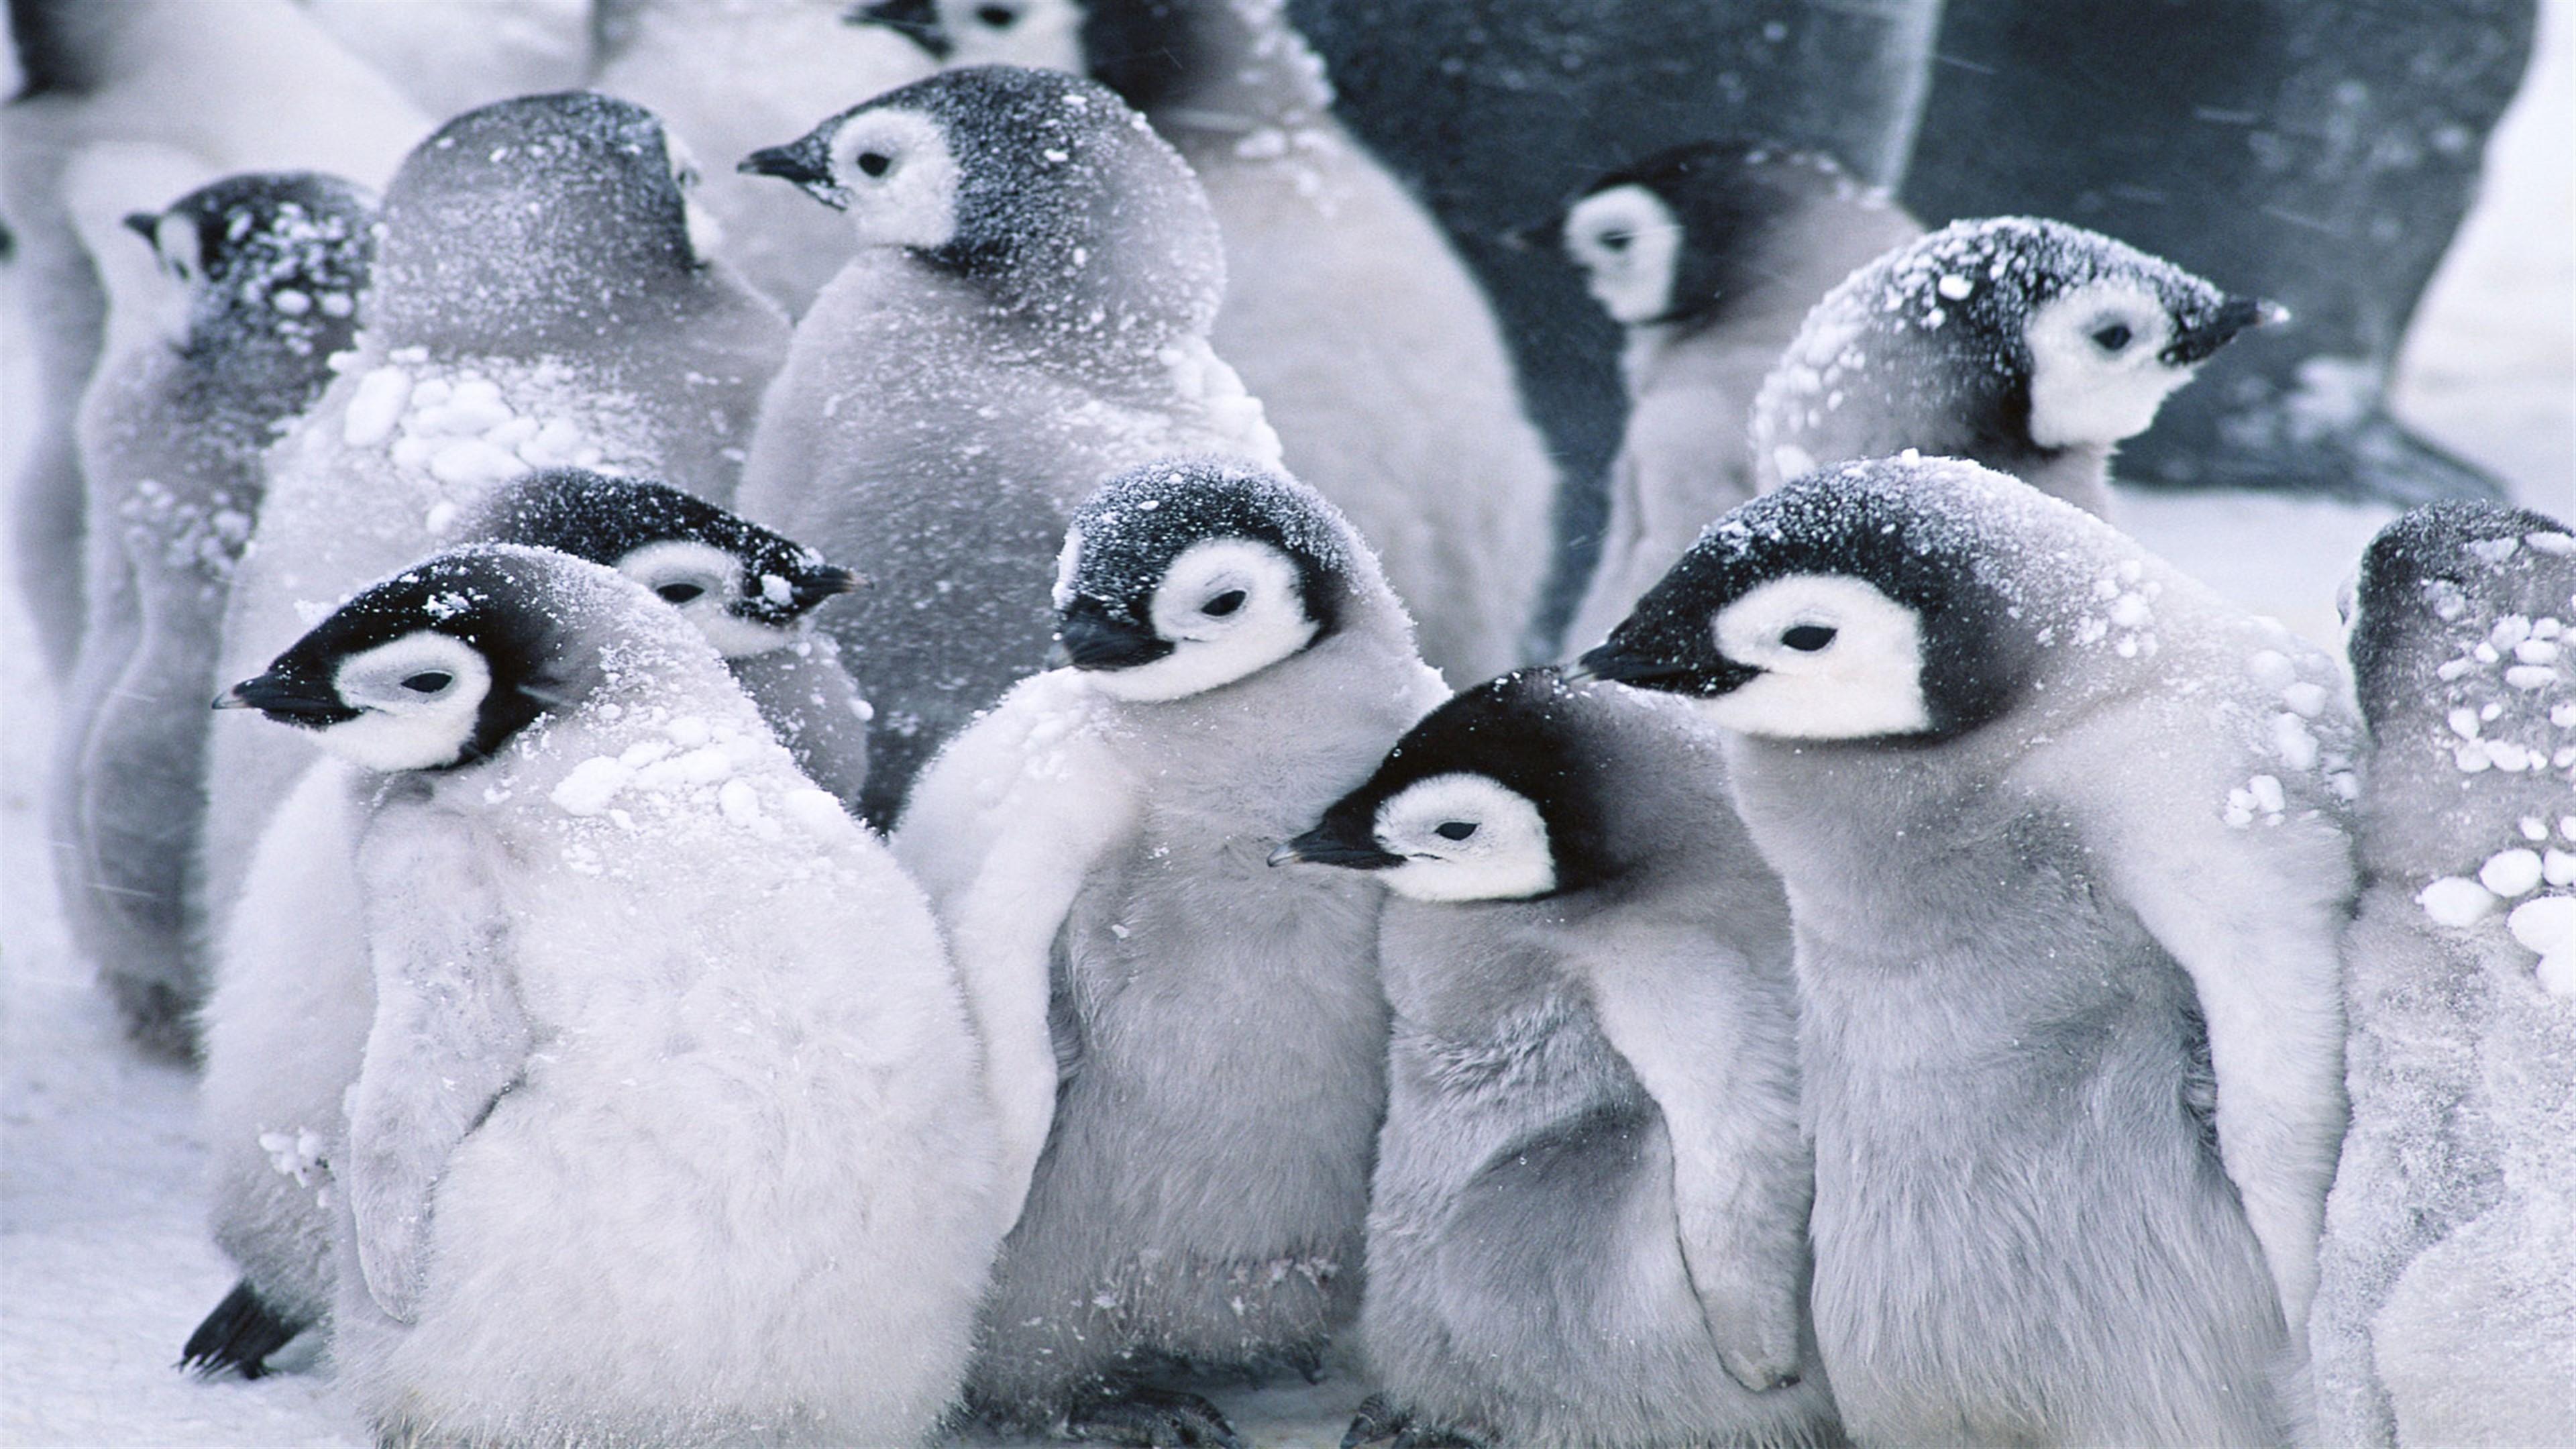 HD wallpaper, Cute Arctic Penguins 4K